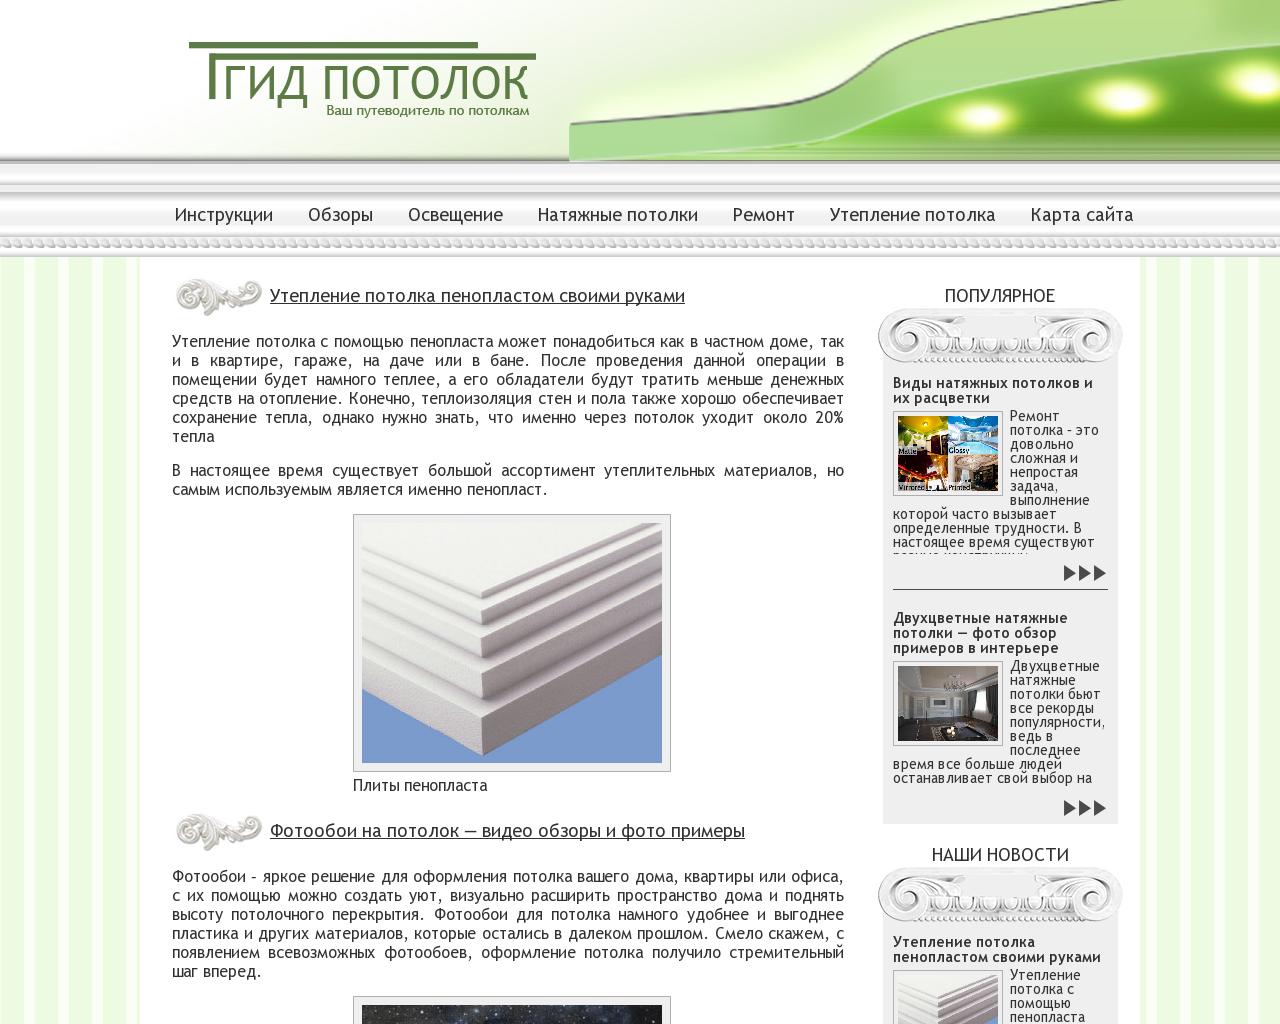 Изображение сайта gidpotolok.ru в разрешении 1280x1024